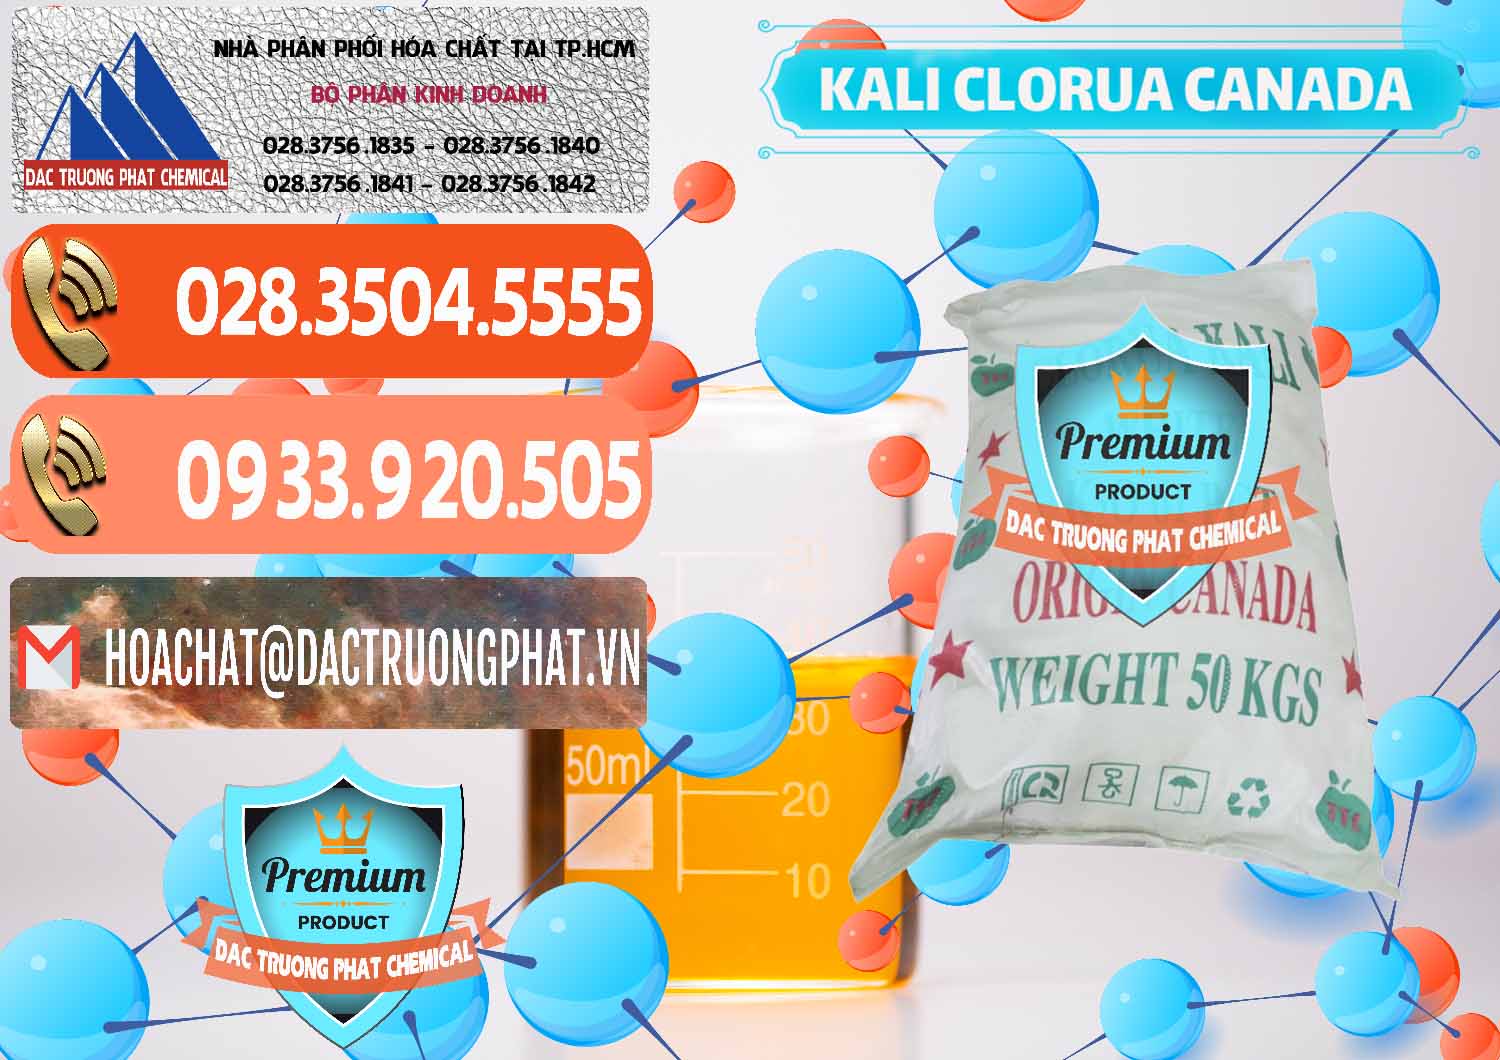 Nơi chuyên nhập khẩu và bán KCL – Kali Clorua Trắng Canada - 0437 - Phân phối ( nhập khẩu ) hóa chất tại TP.HCM - hoachatmientay.com